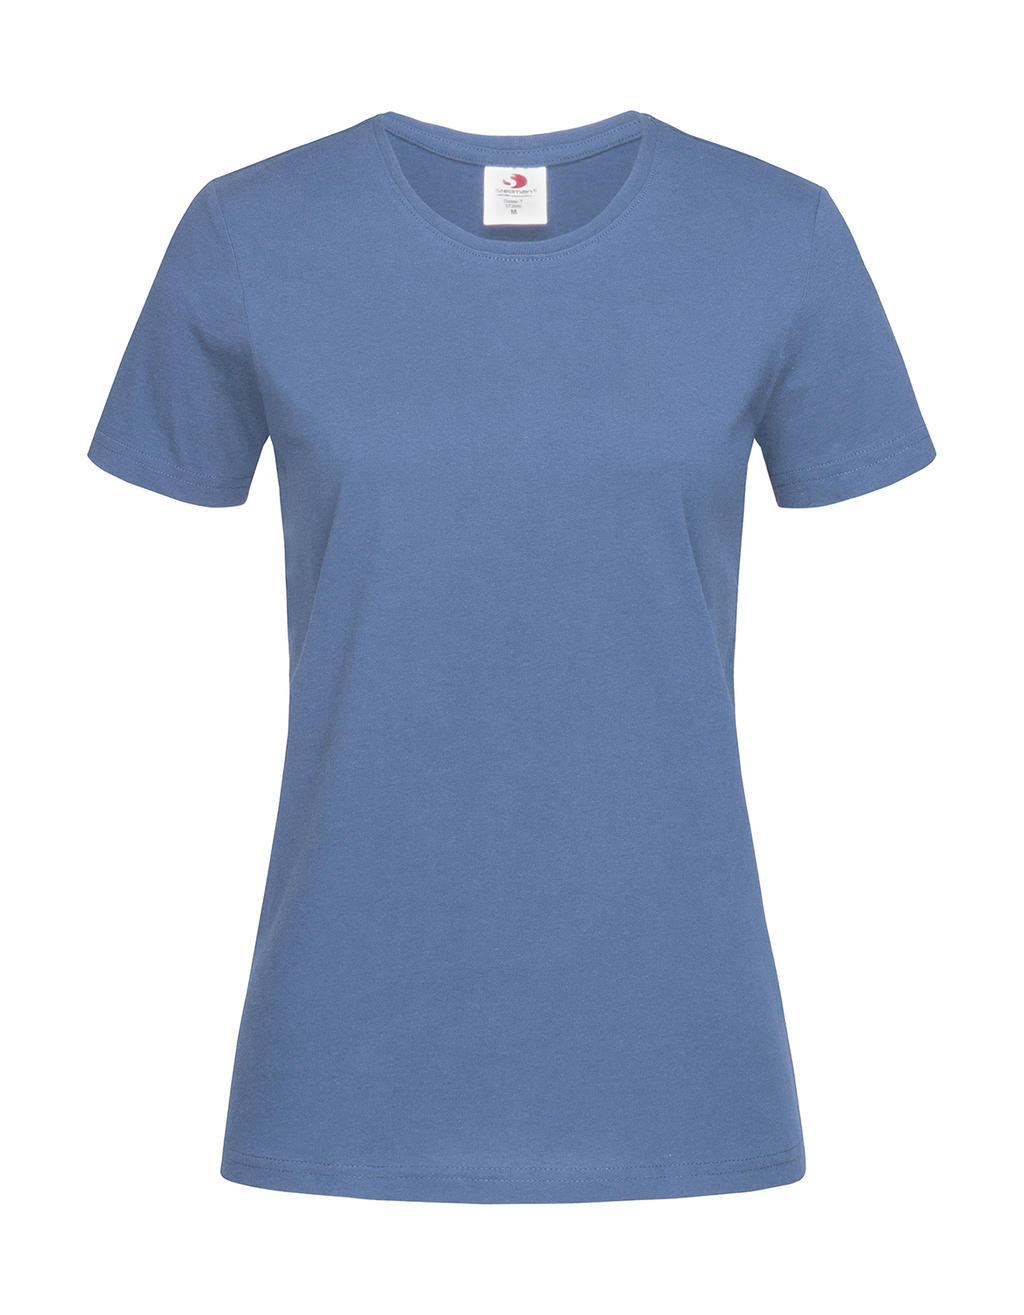 Tričko dámské Stedman Fitted s kulatým výstřihem - středně modré, S